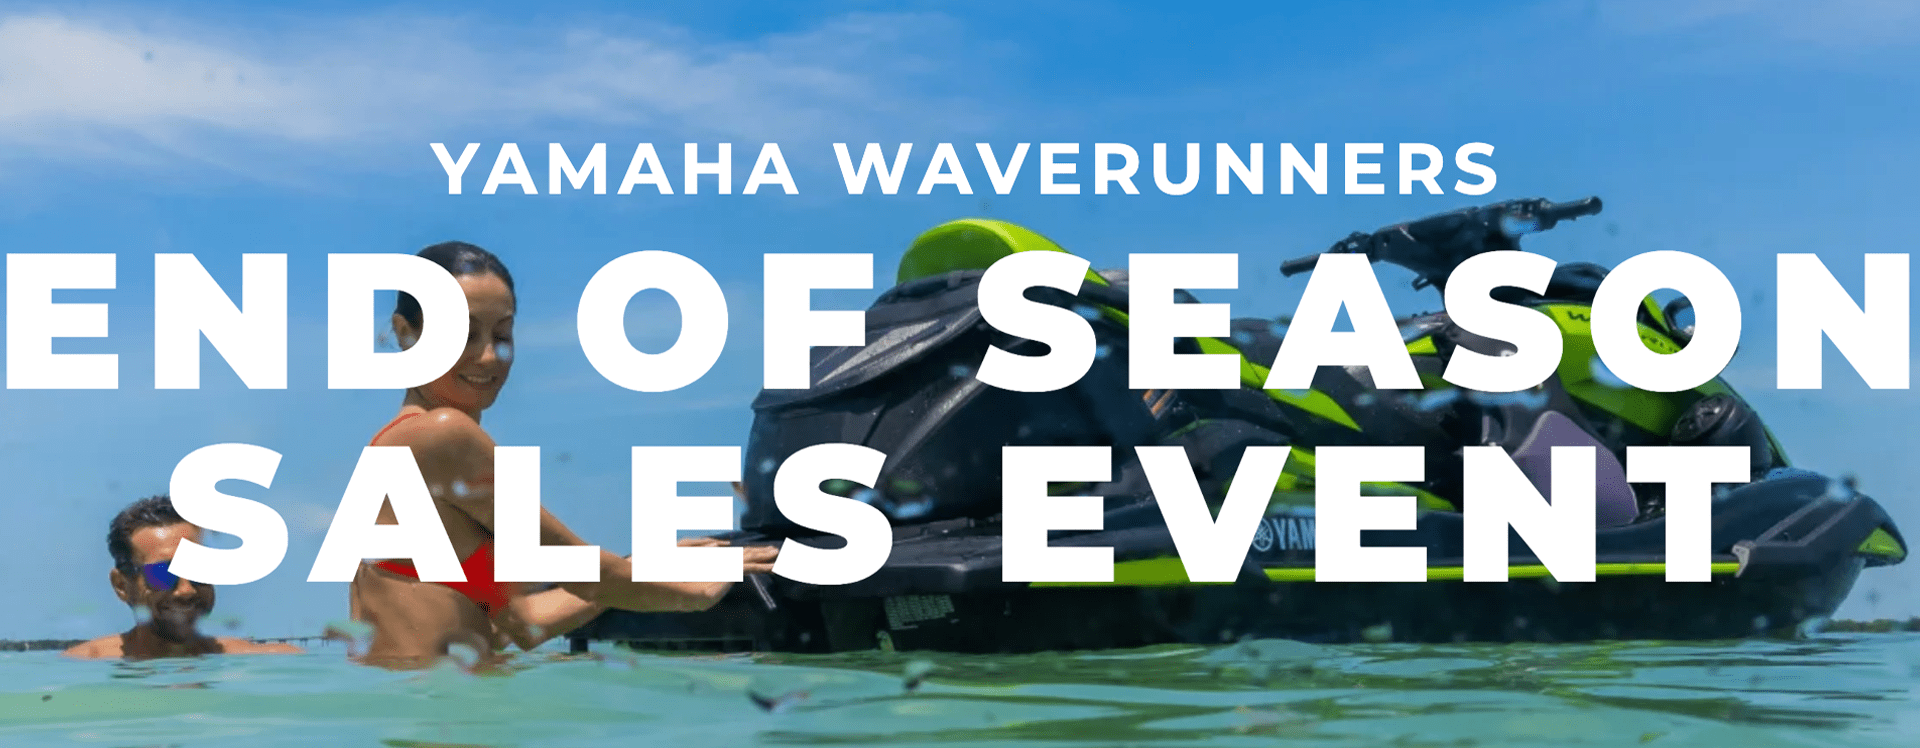 yamaha waverunner promotion